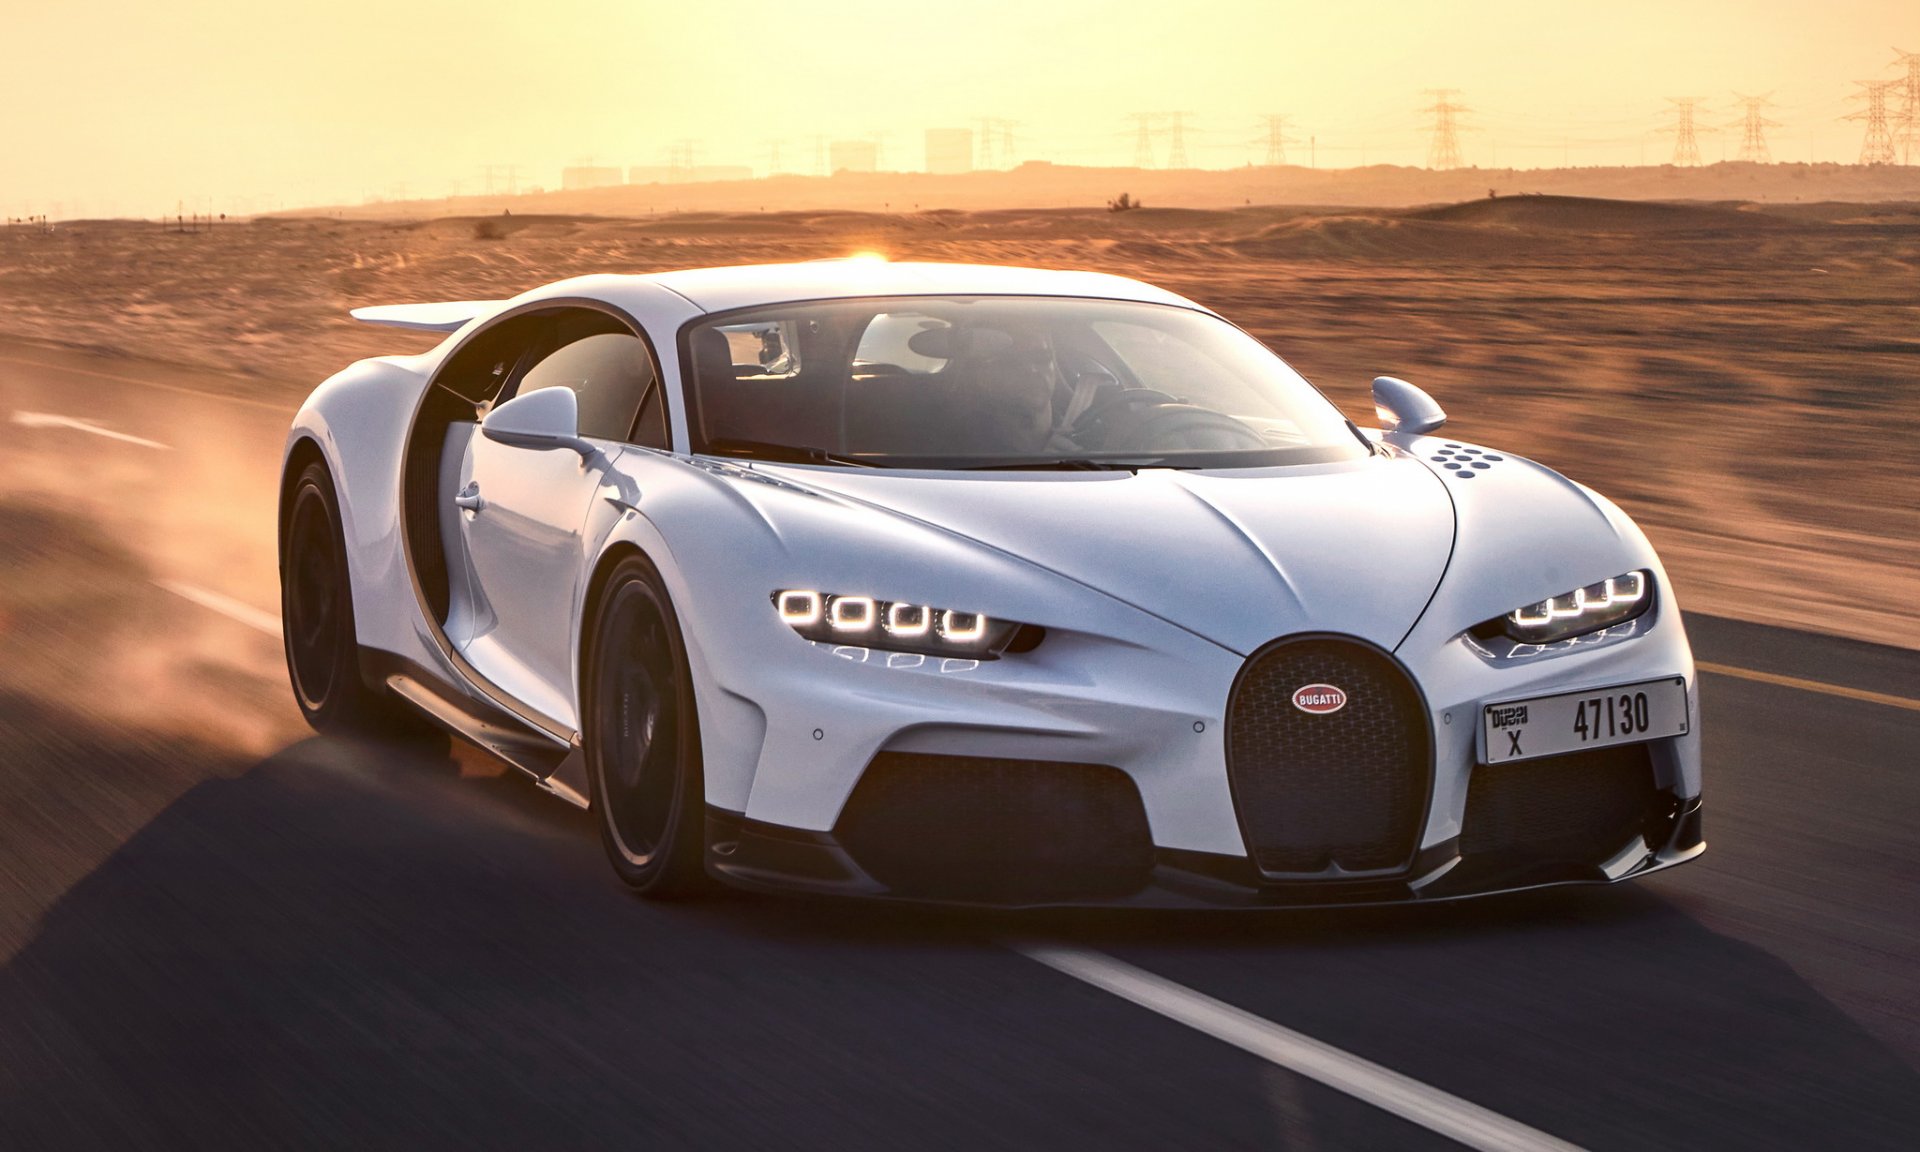 เจาะจุดสำคัญ Bugatti Chiron Super Sport ทำไมมันถึงวิ่งเร็ว แถมควบคุมสุดยอดขนาดนี้!?